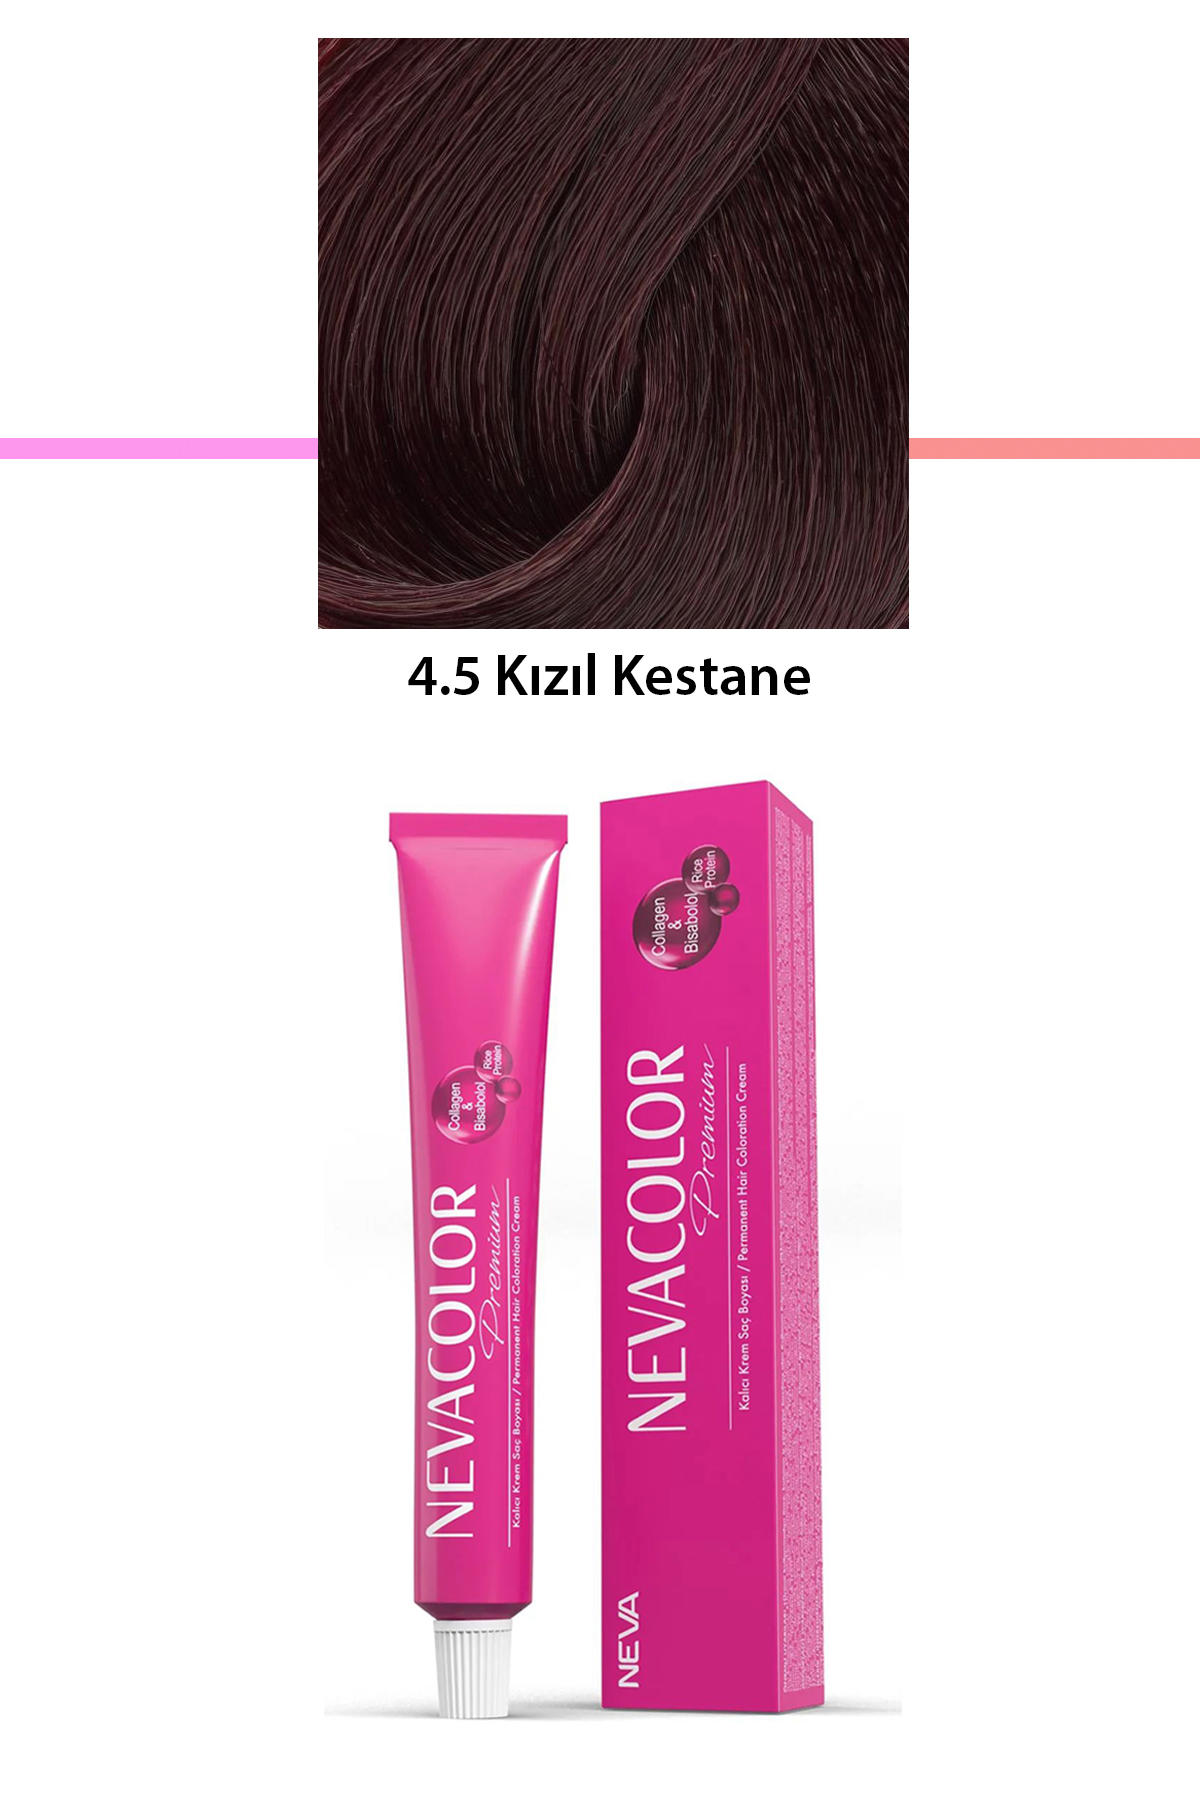 Nevacolor 4.5 Kızıl Kestane Organik Krem Saç Boyası 50 gr